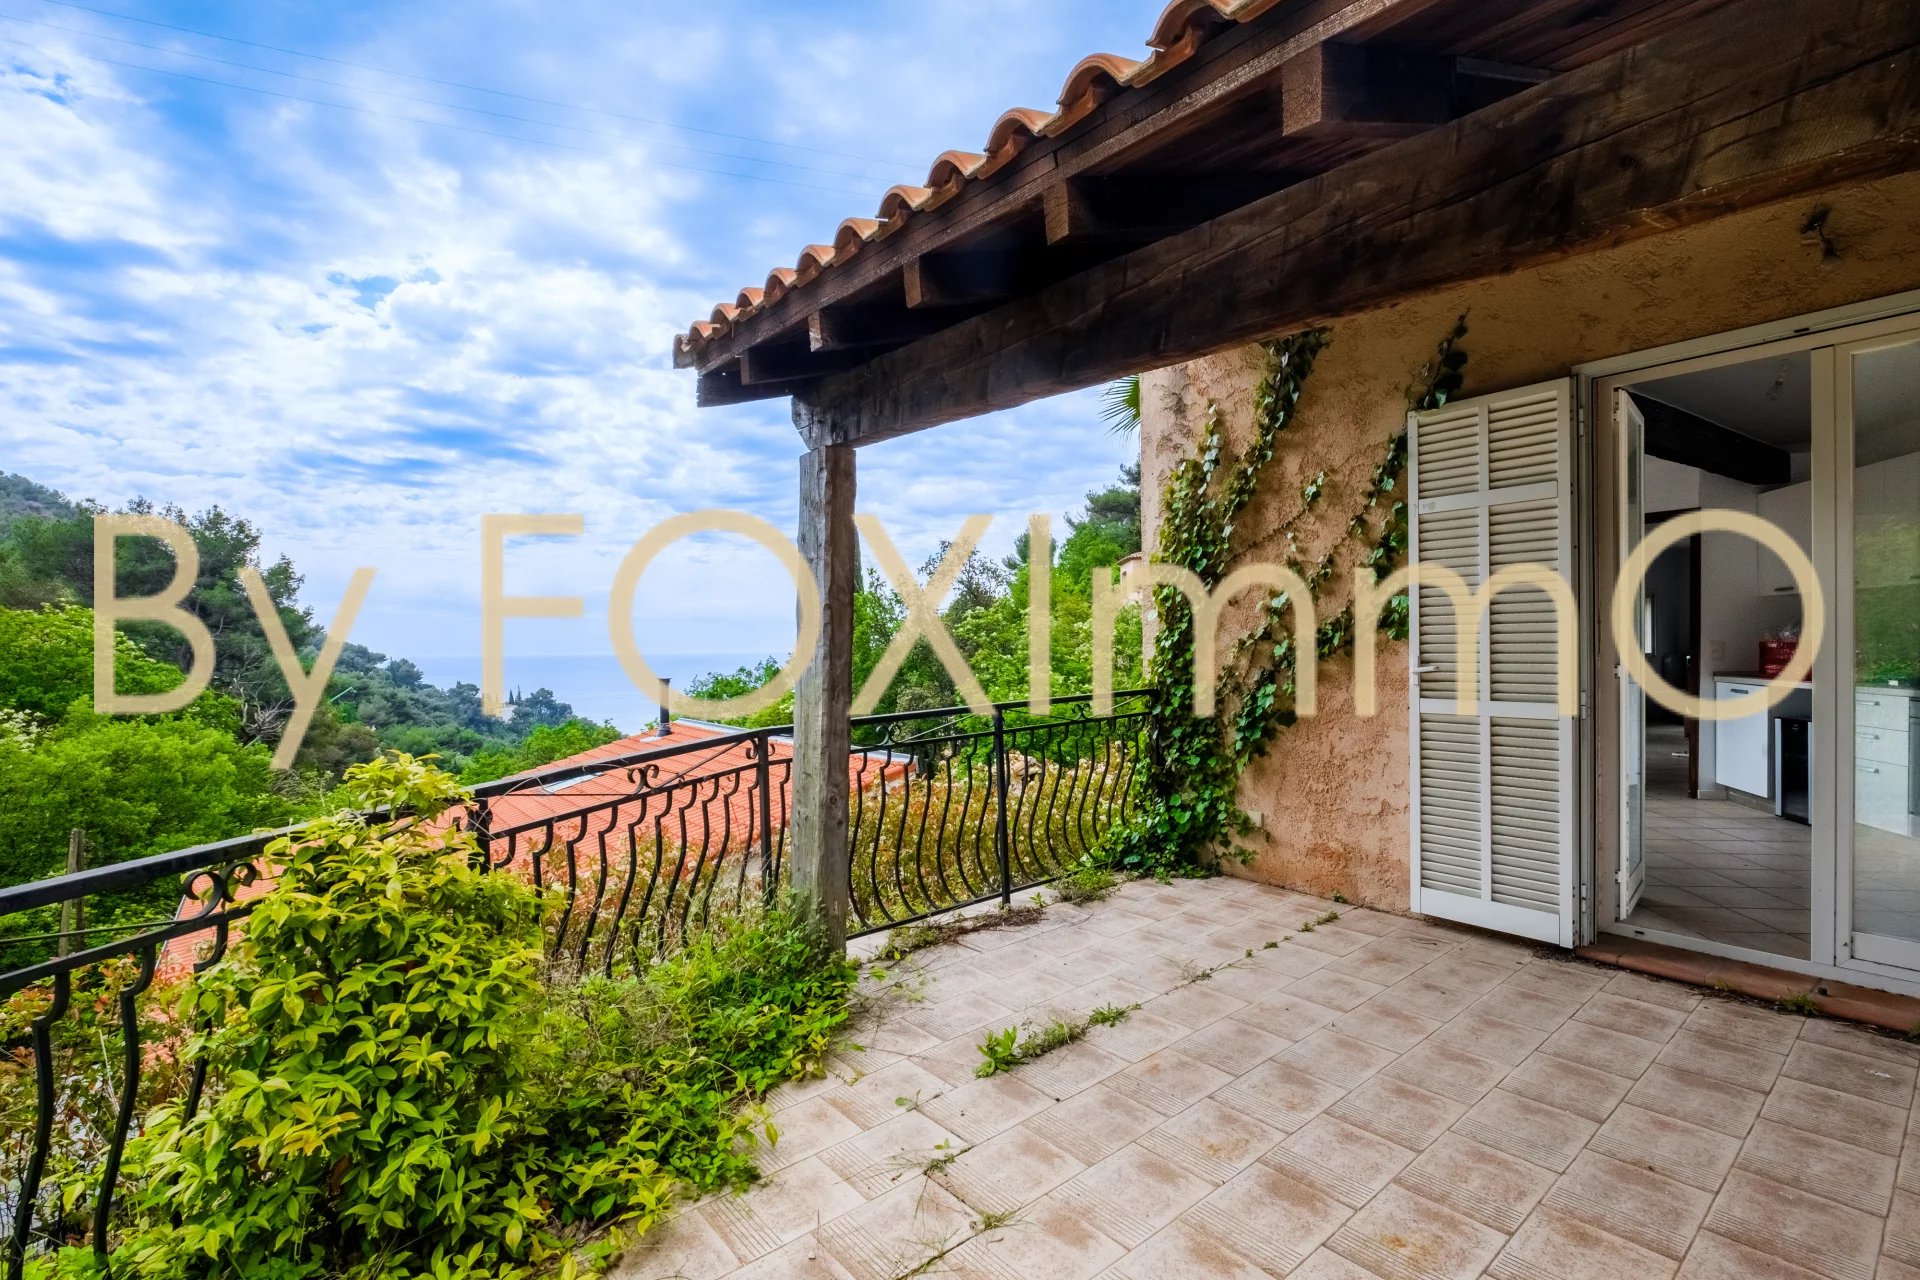 In vendita in Costa Azzurra, bella casa indipendente di 4 locali su un unico livello, vista libera sul MARE